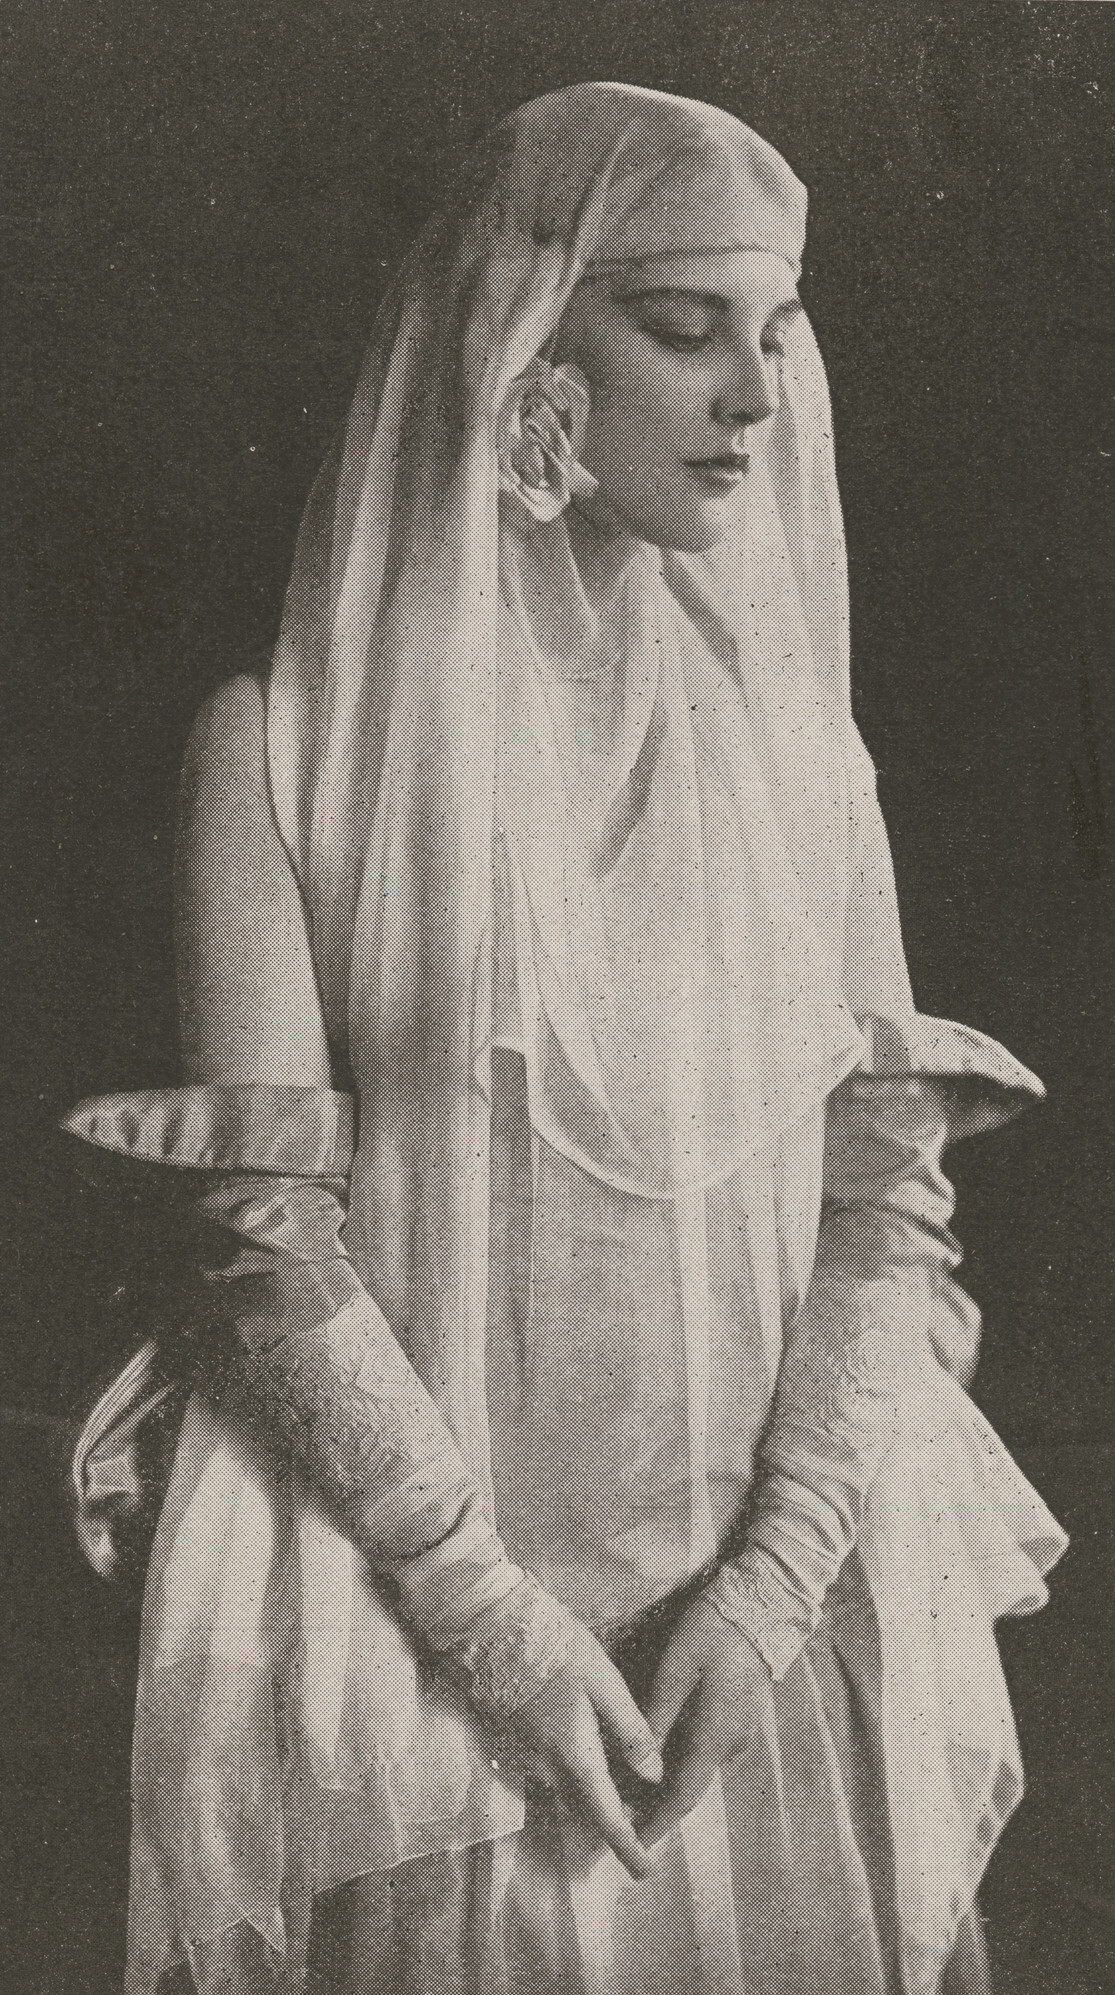 Рекламная фотография Жюстин Джонстон для постановки Безумства Зигфелда, 1916. Фотограф Sarony and Co